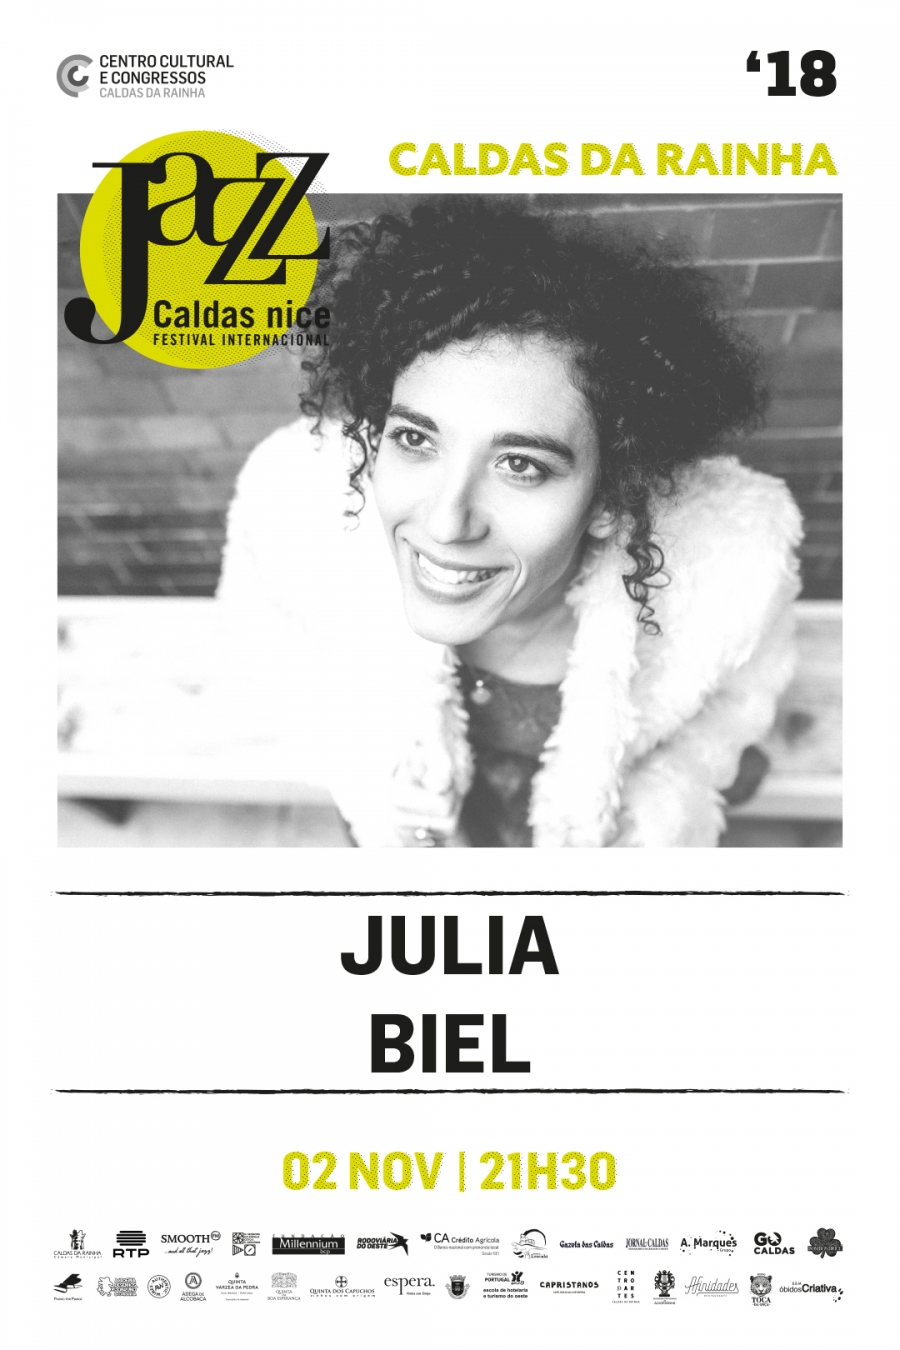 JULIA BIEL